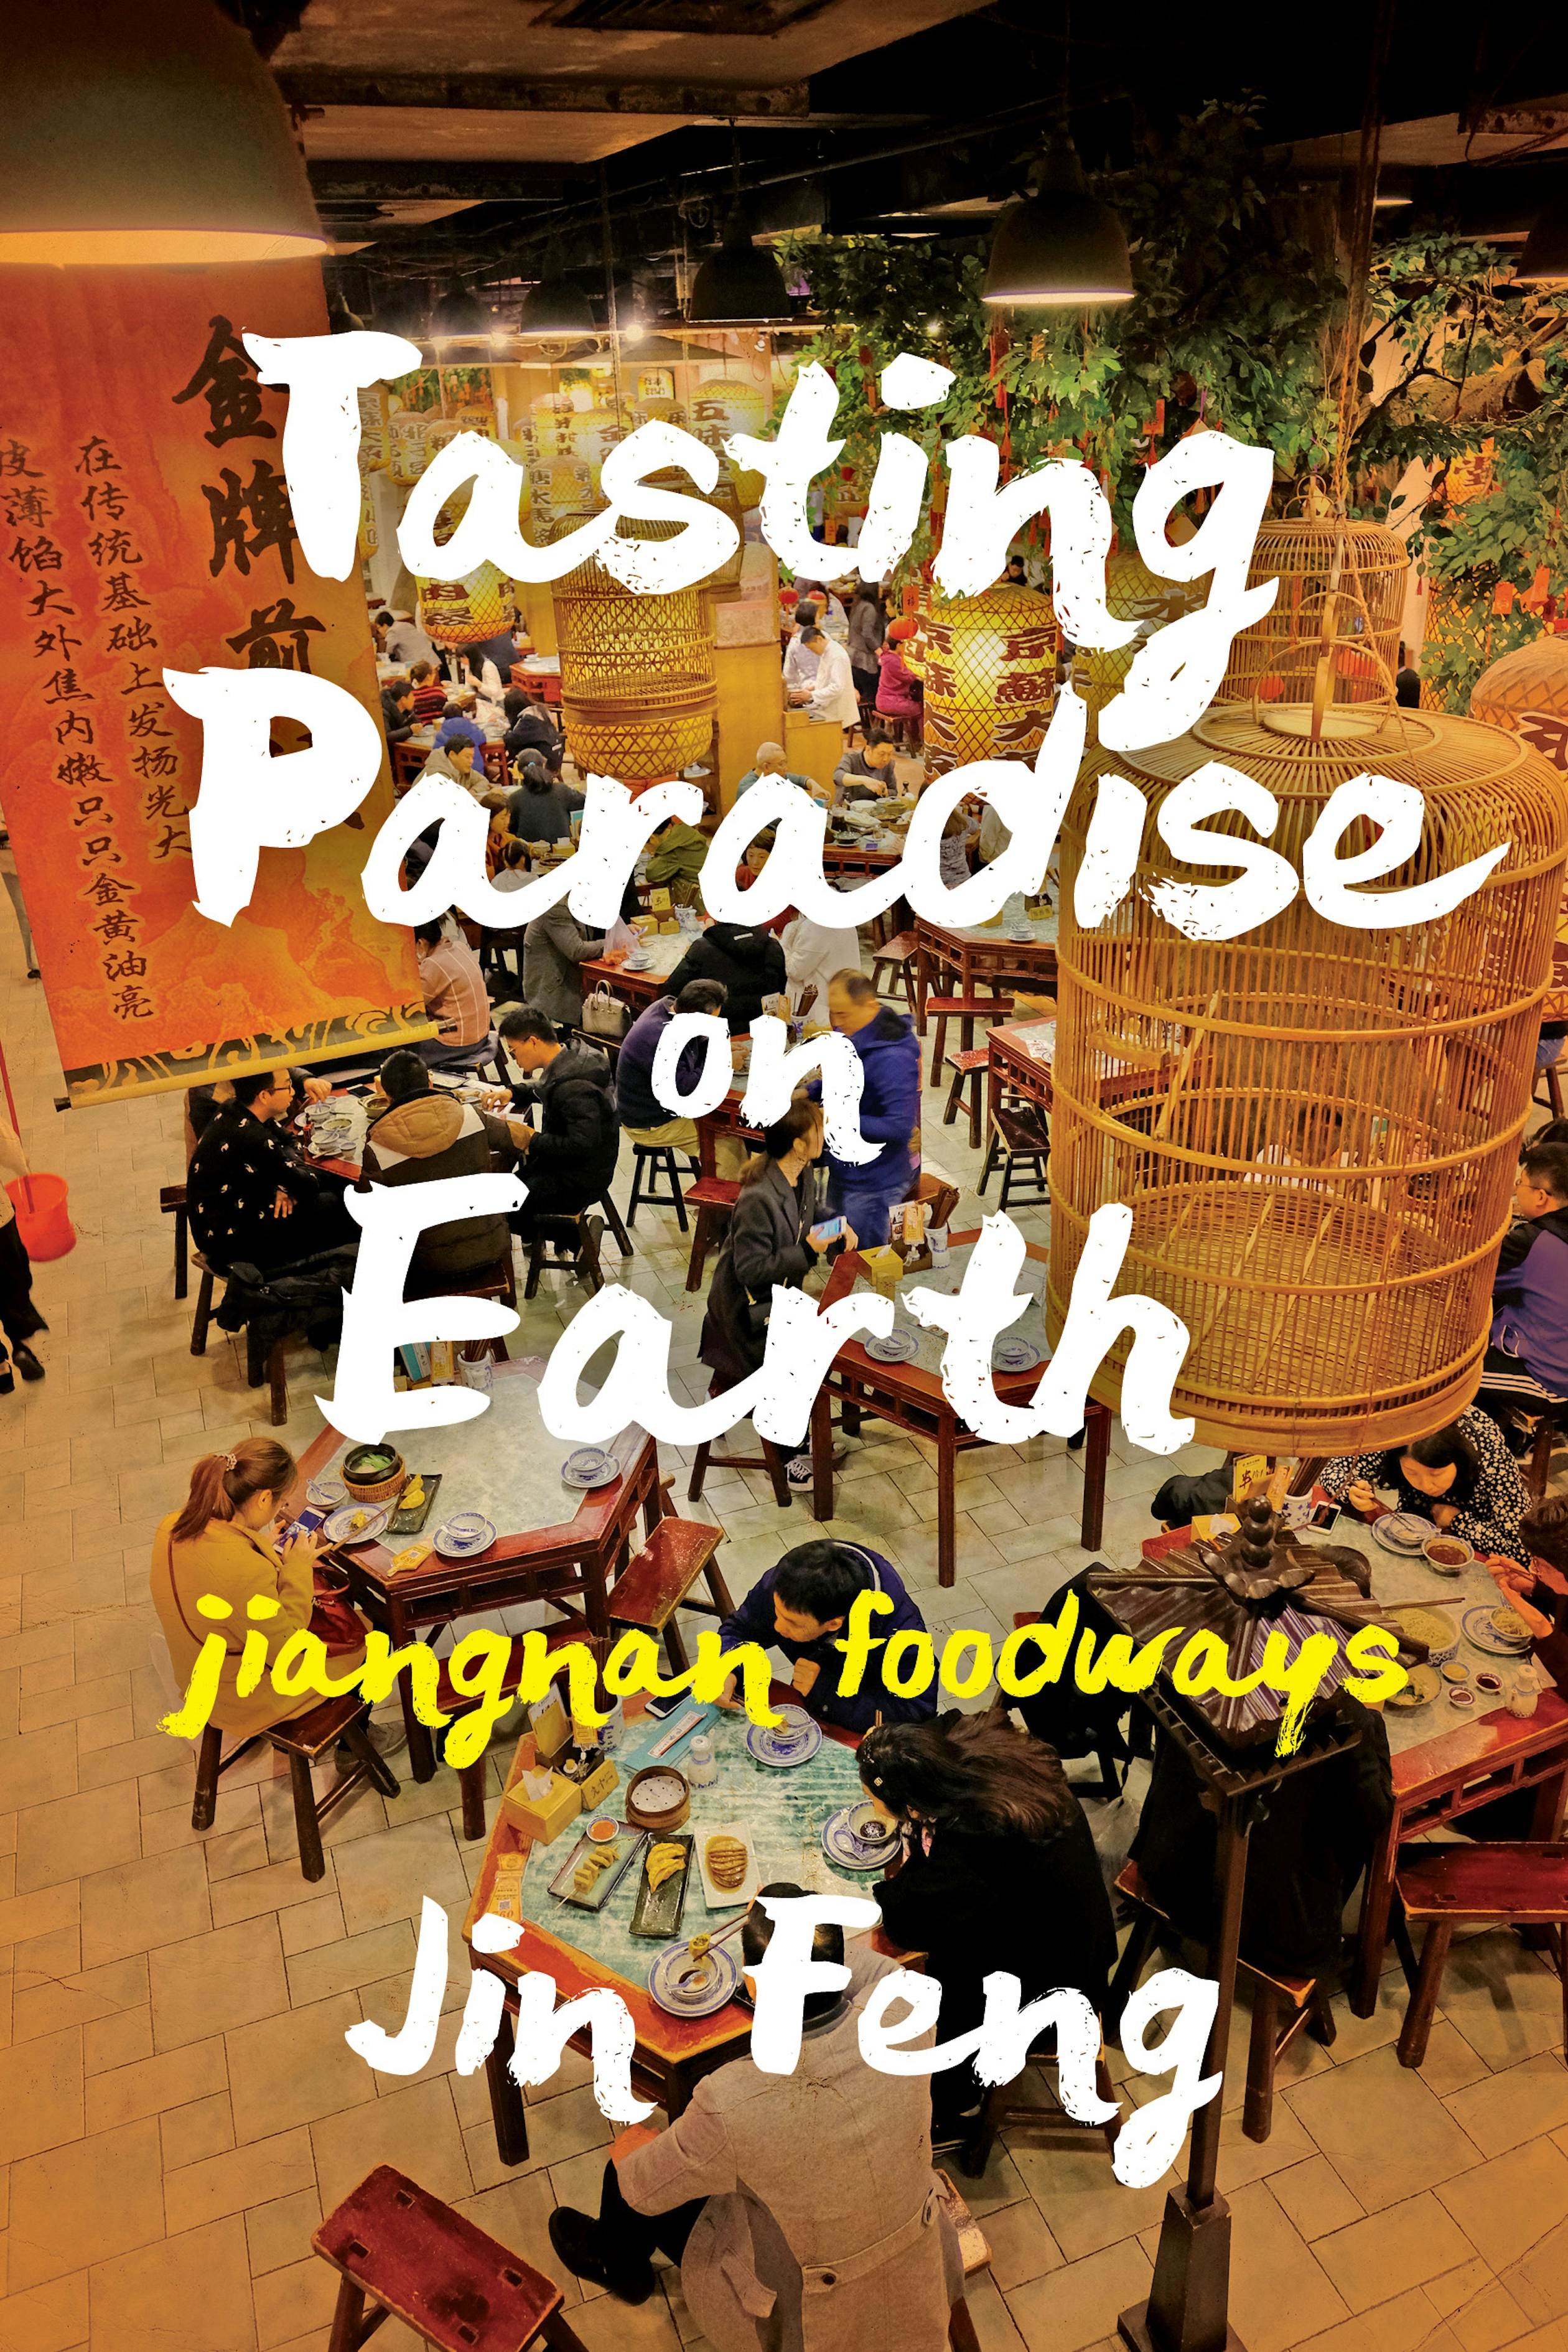 Tasting Paradise on Earth